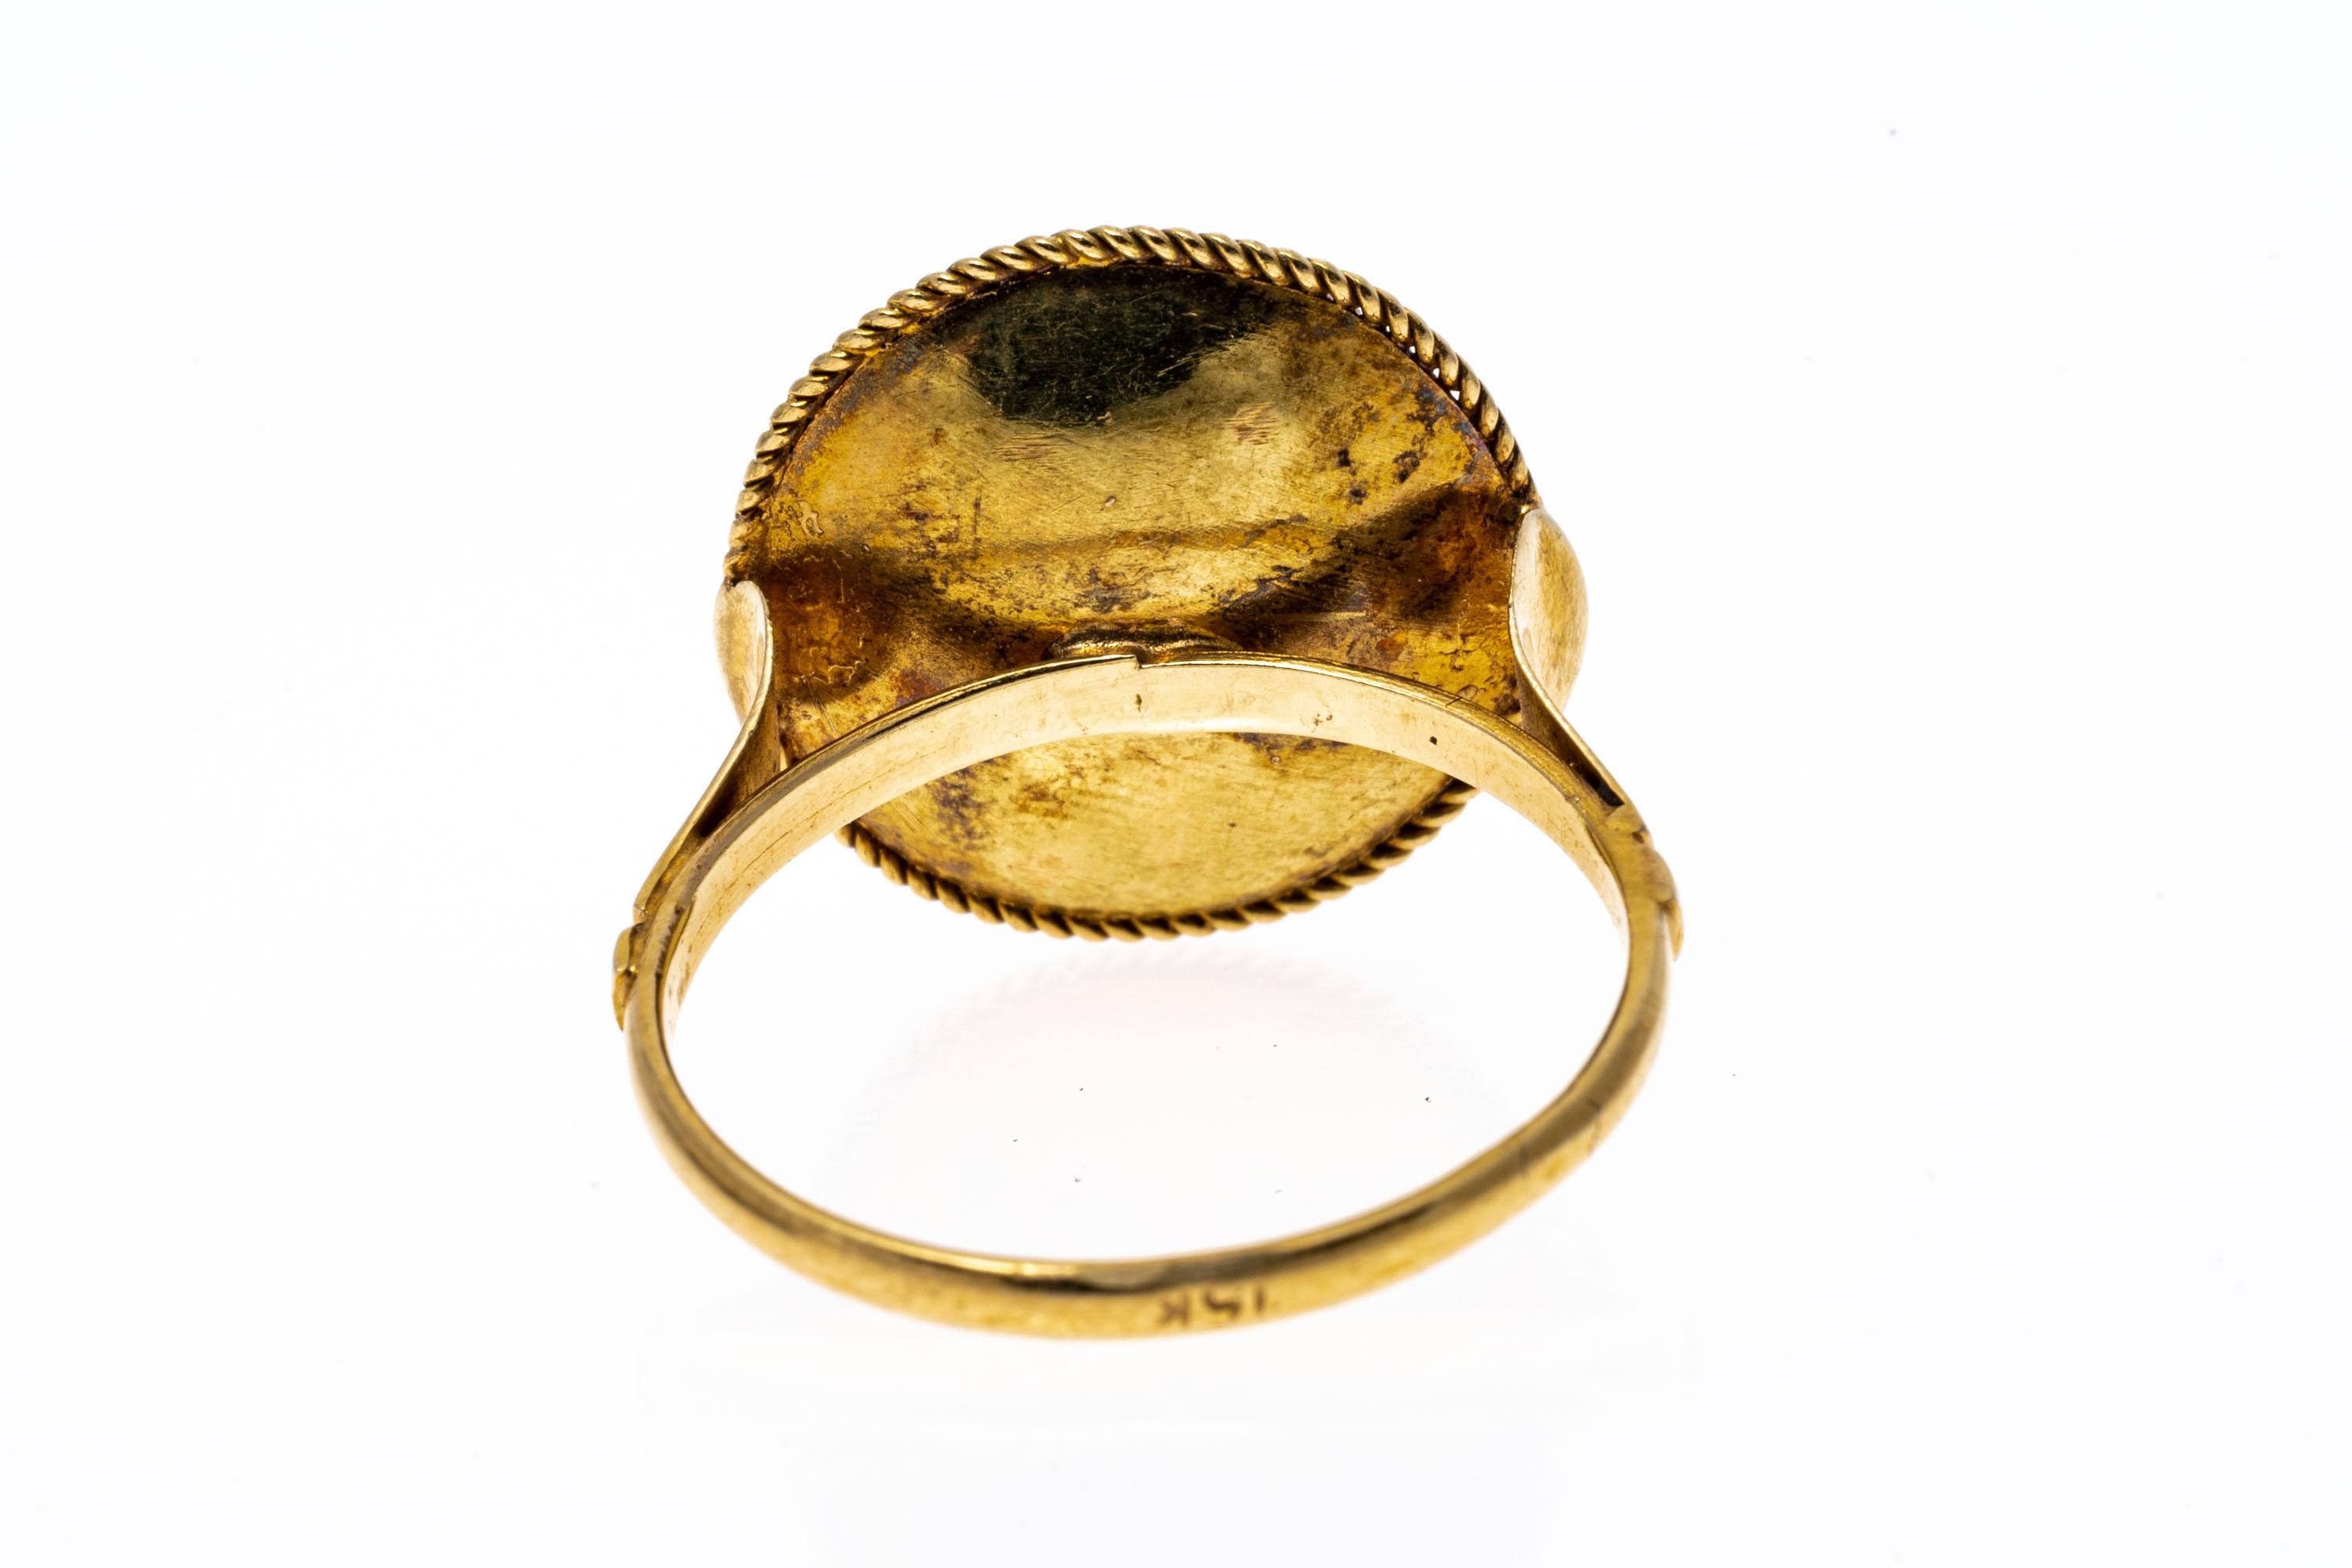 jodha ring design gold